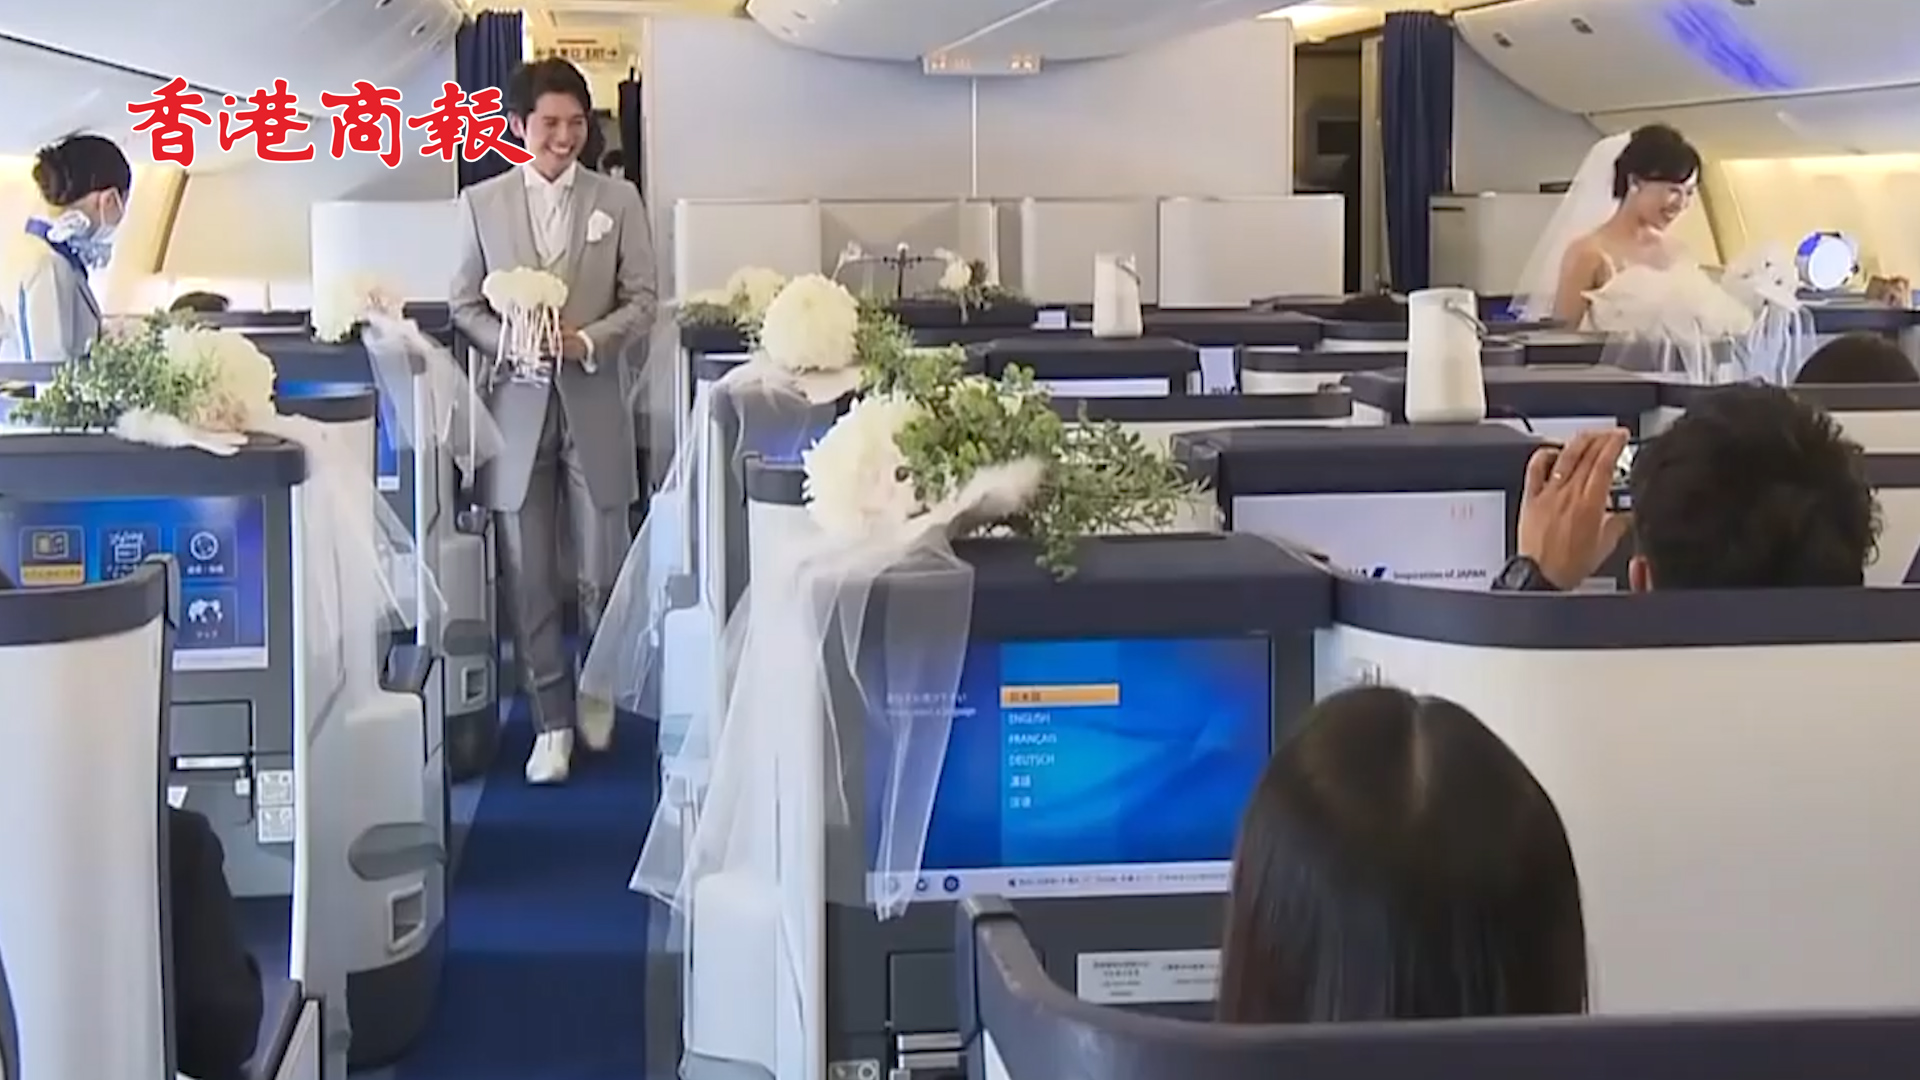 有片丨日本推出機上婚禮 全套費用約合21萬港元